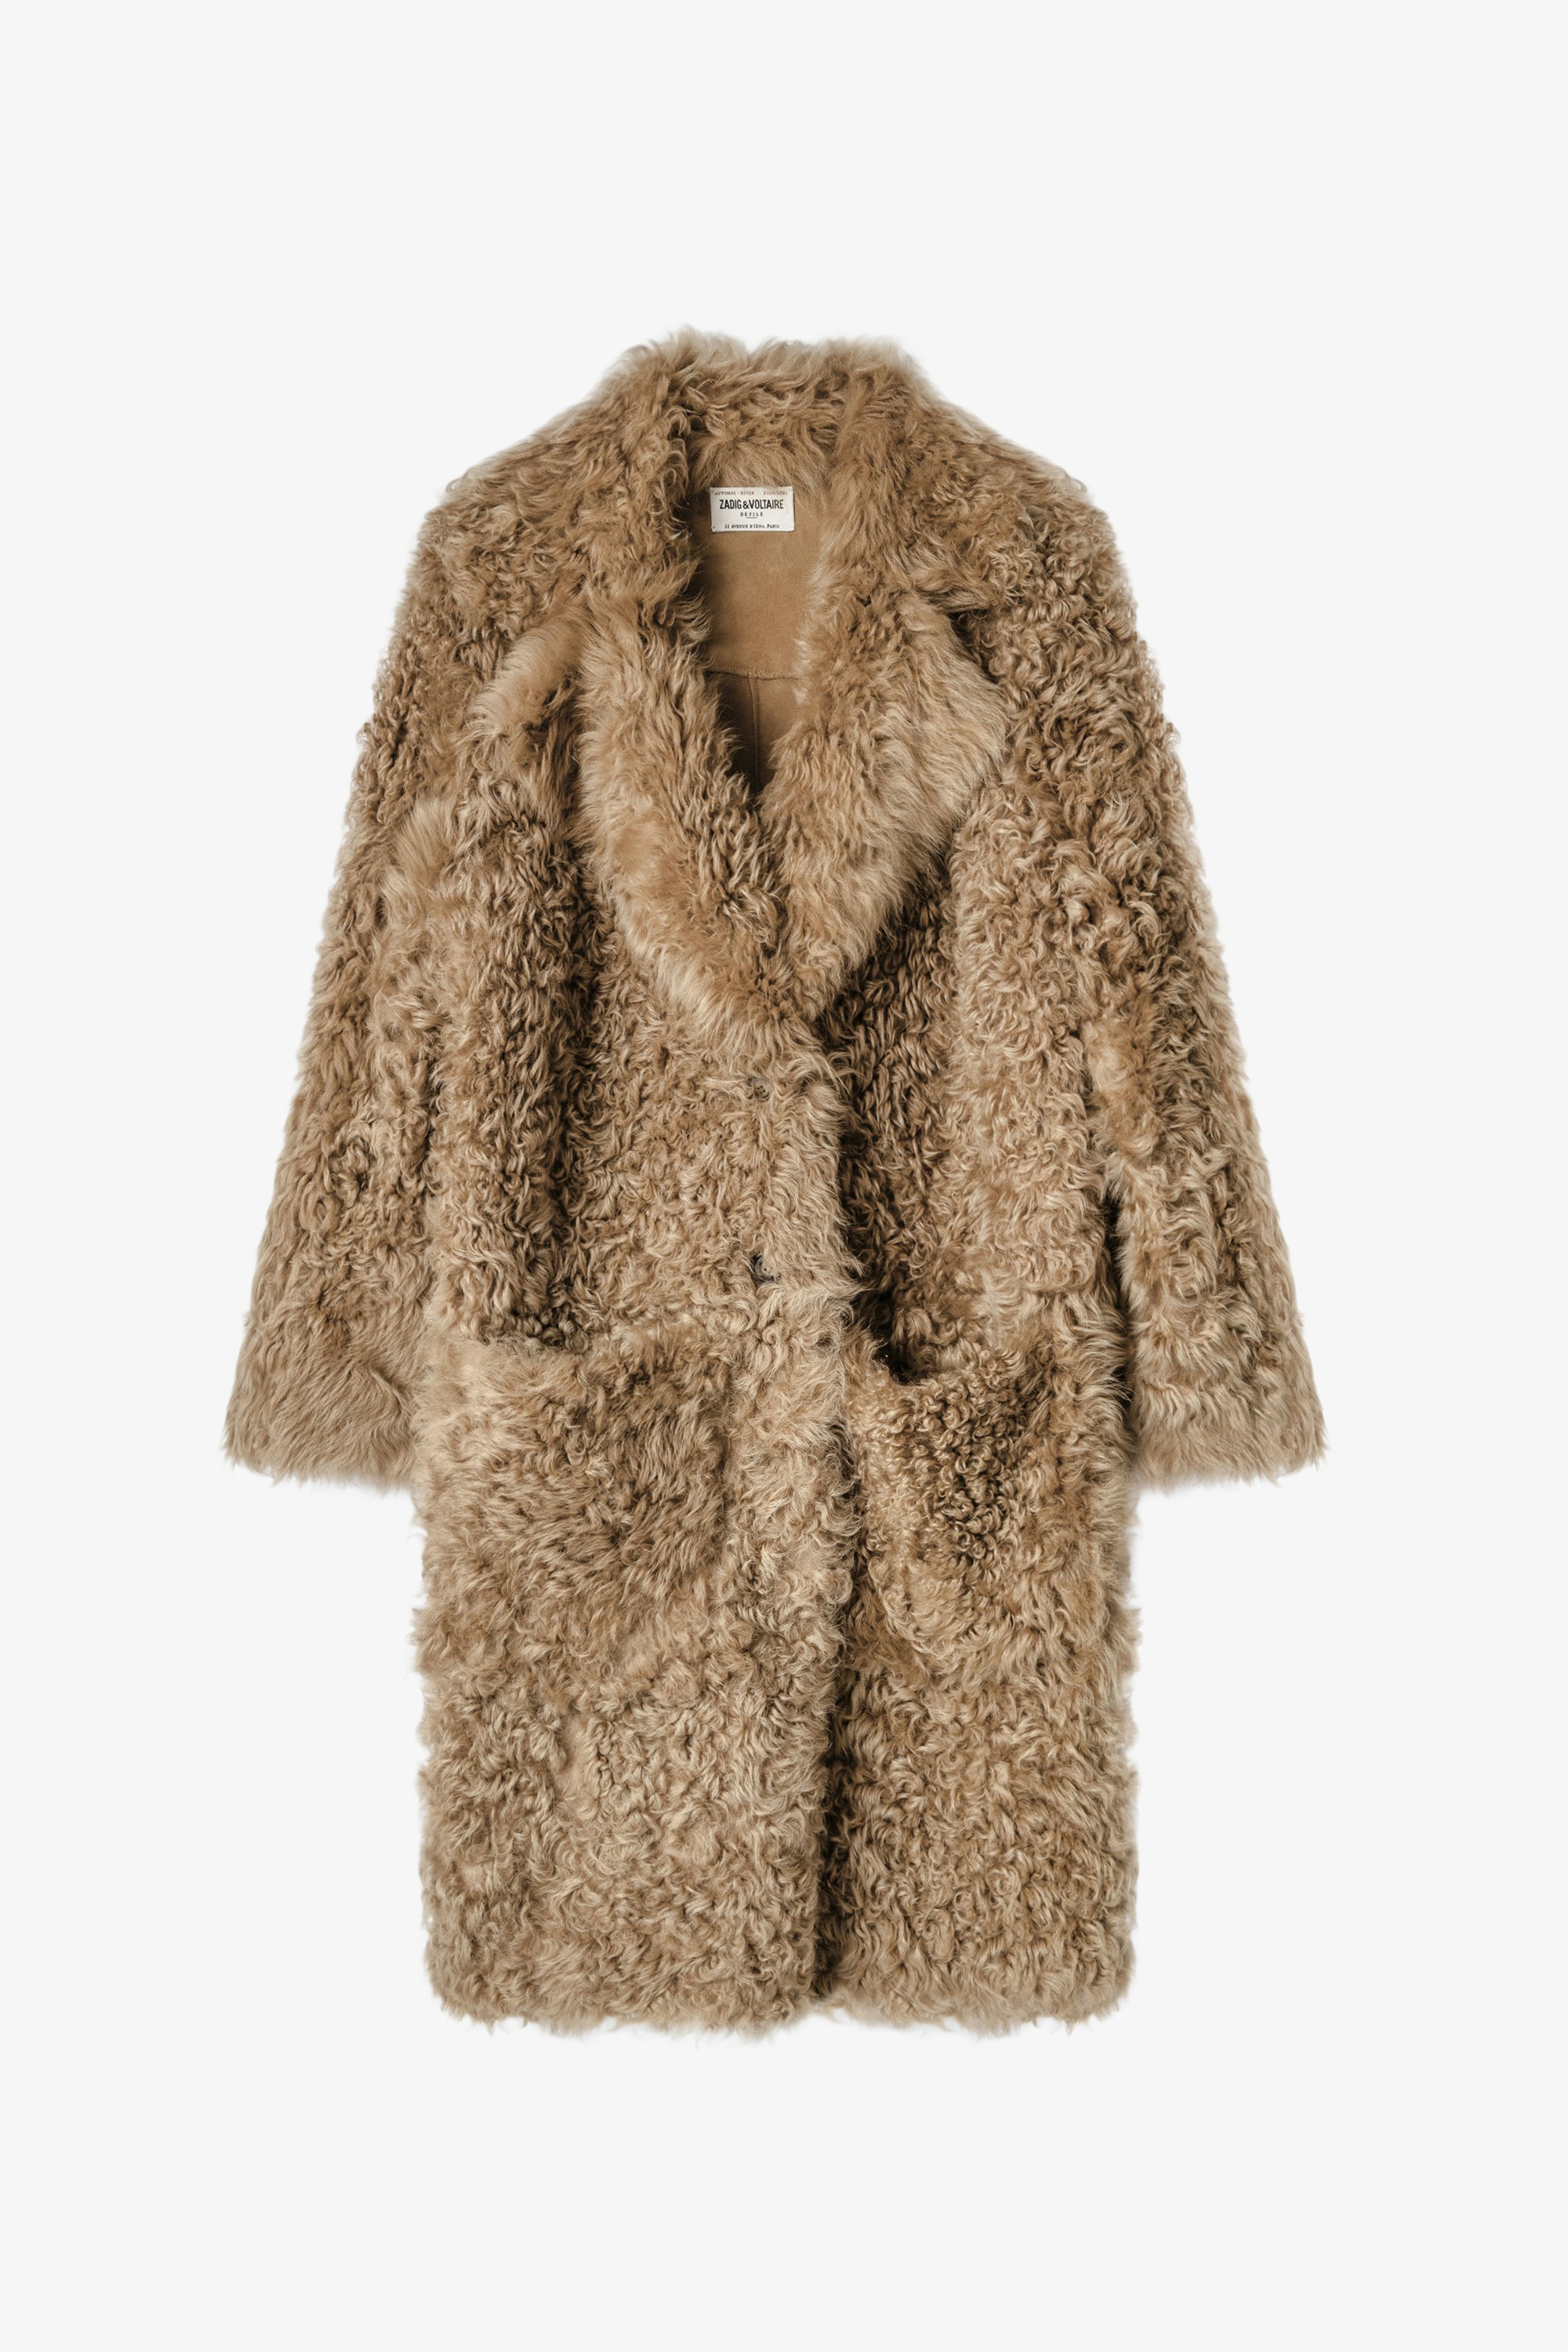 Mady Wavy Coat  Women’s caramel sheepskin coat.